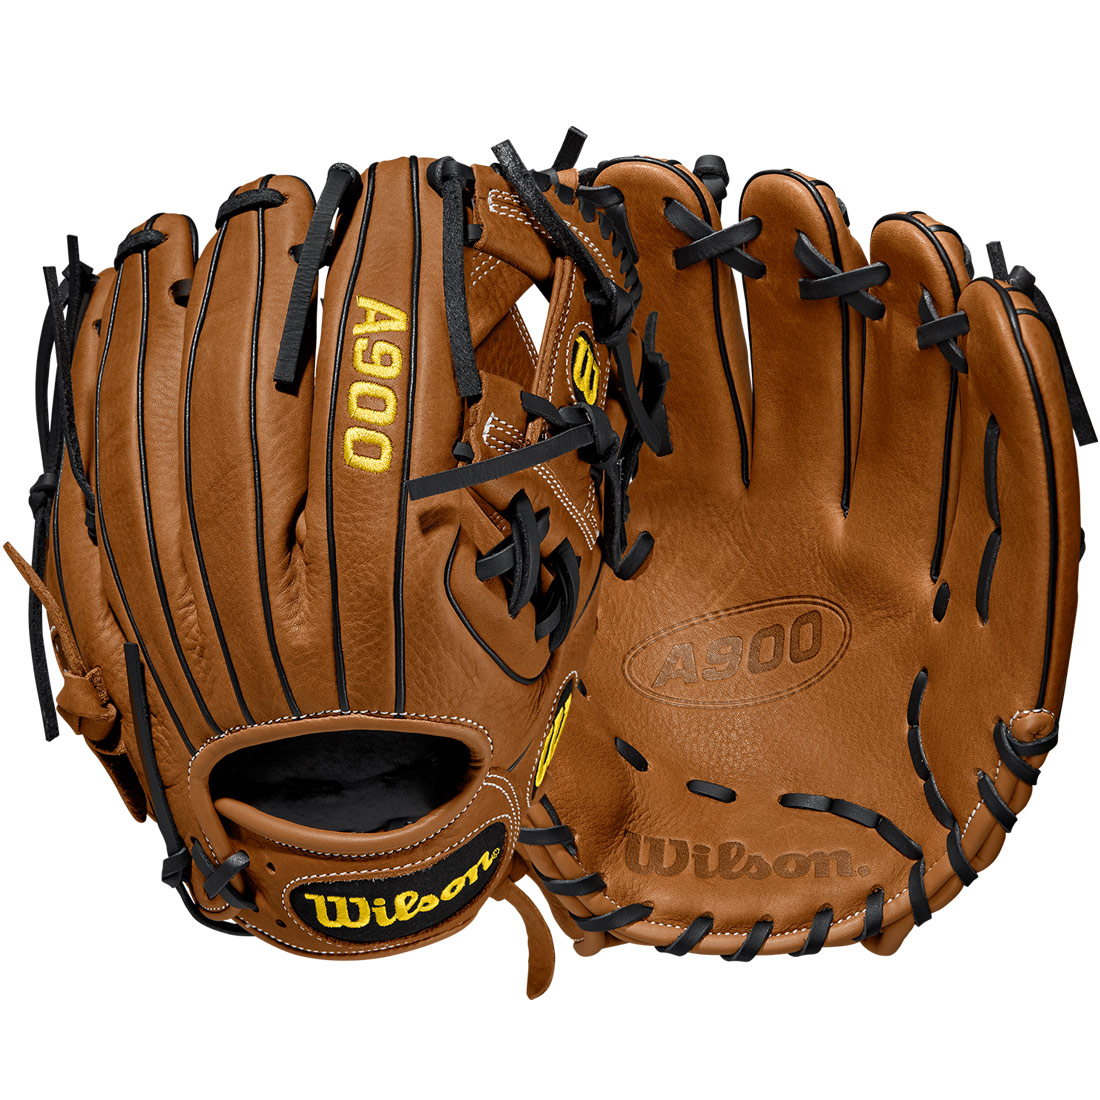 Details about   Wilson A900 Baseball Glove Series 